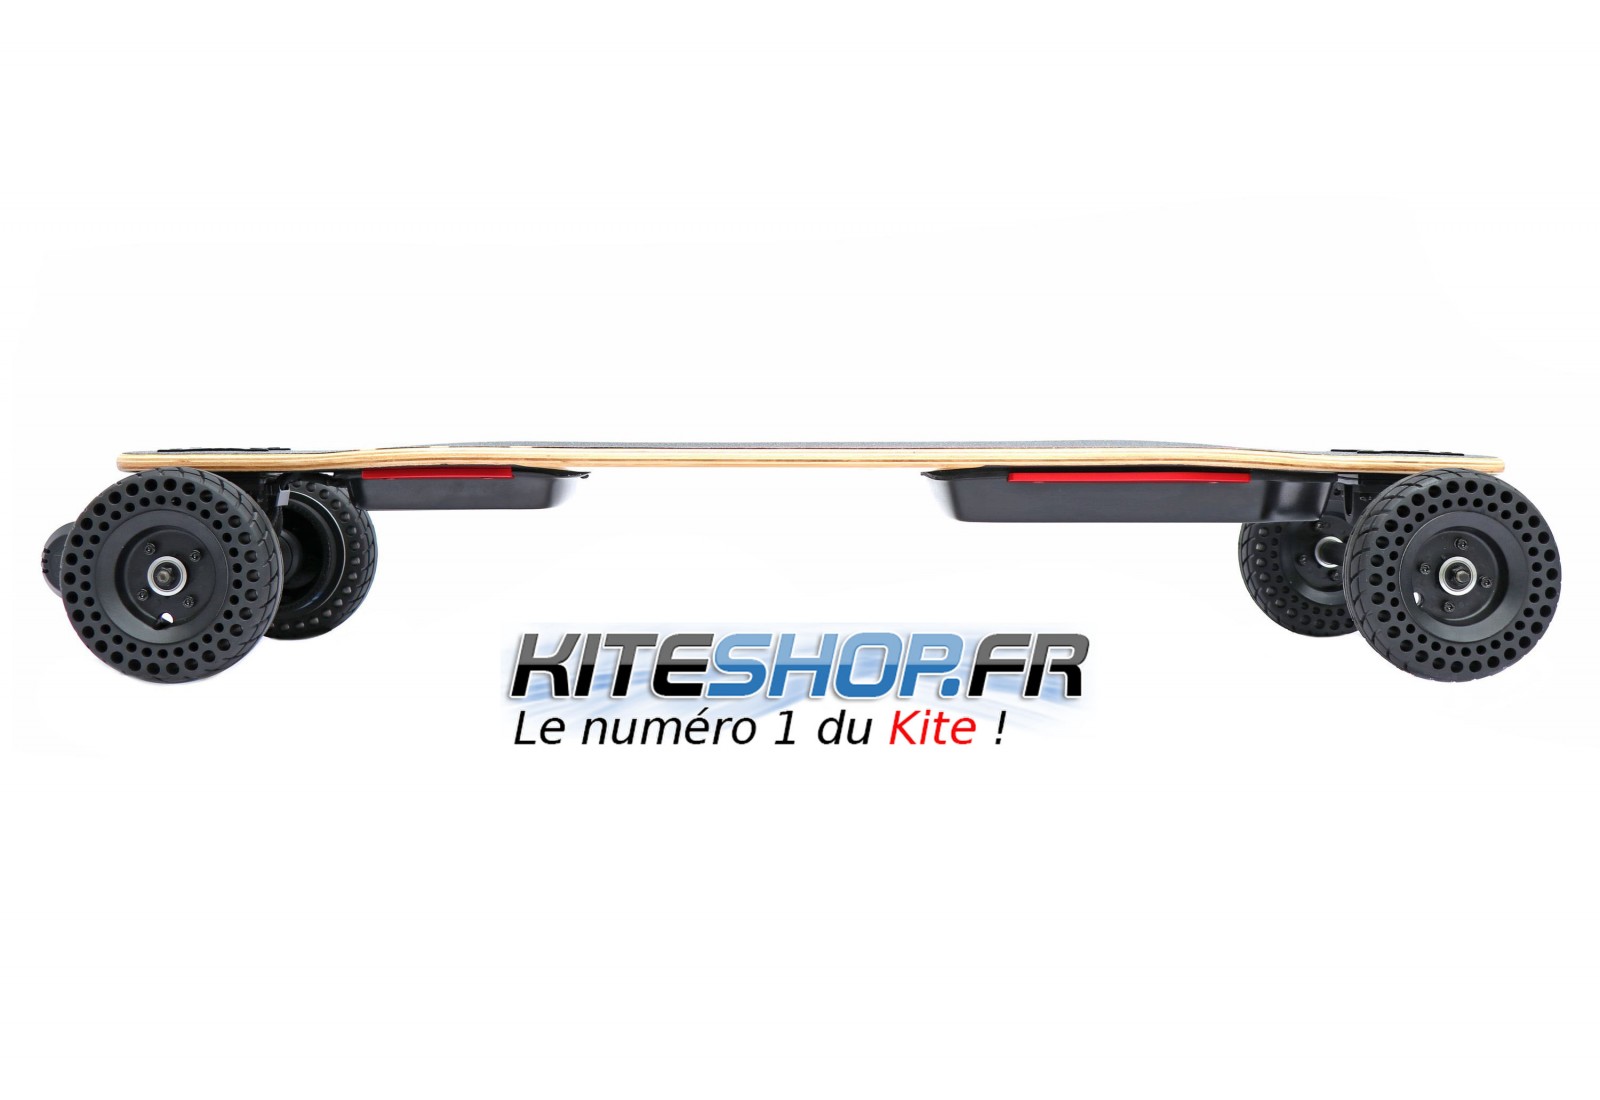 Skateboard électrique Switcher HP v2 - 11,6 Ah/ 14 Ah – PIE TECHNOLOGIE